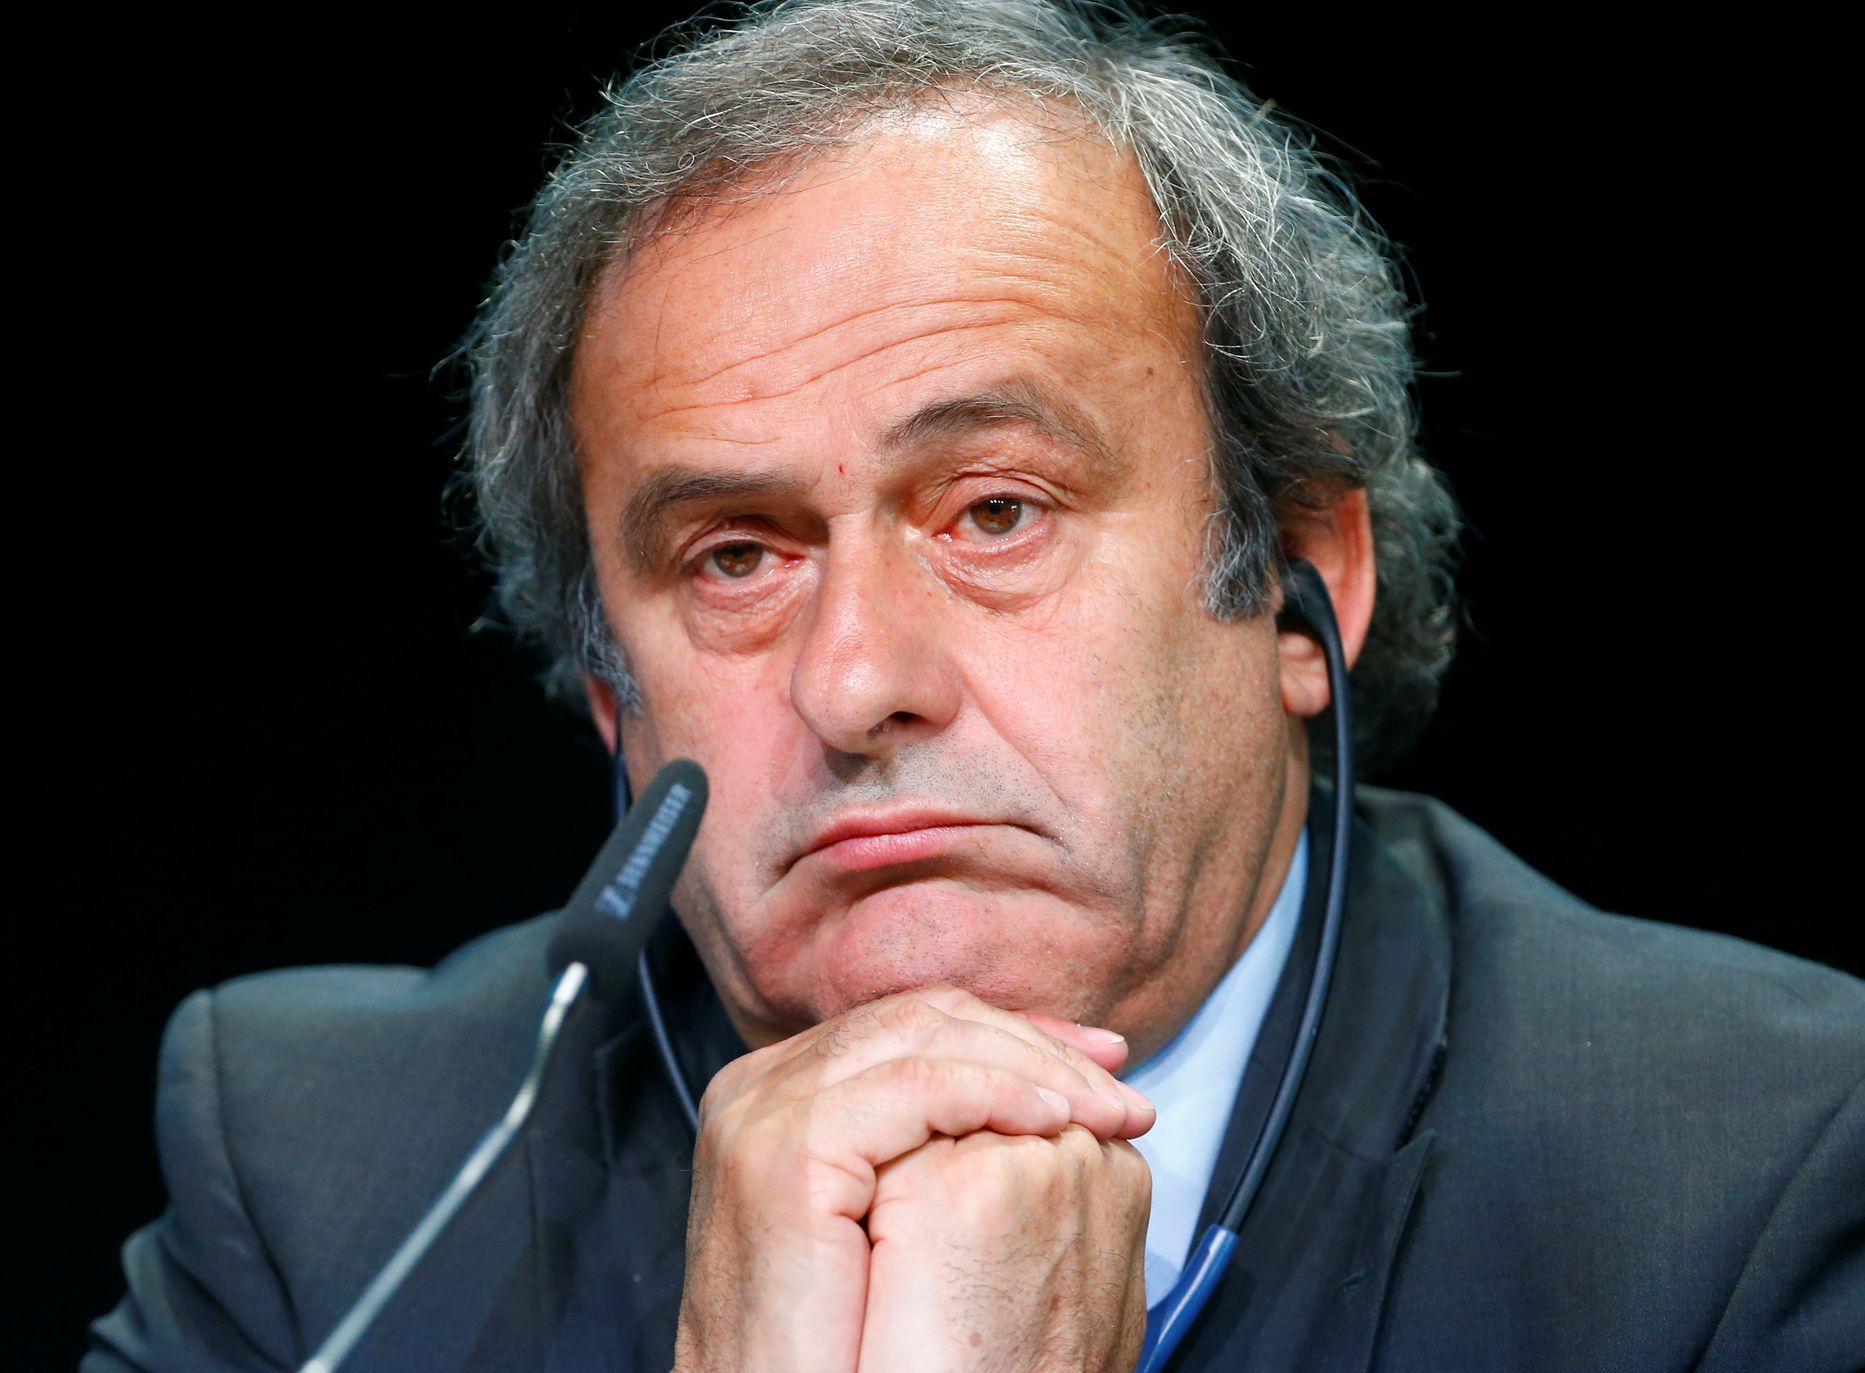 Prezident UEFA Michel Platini